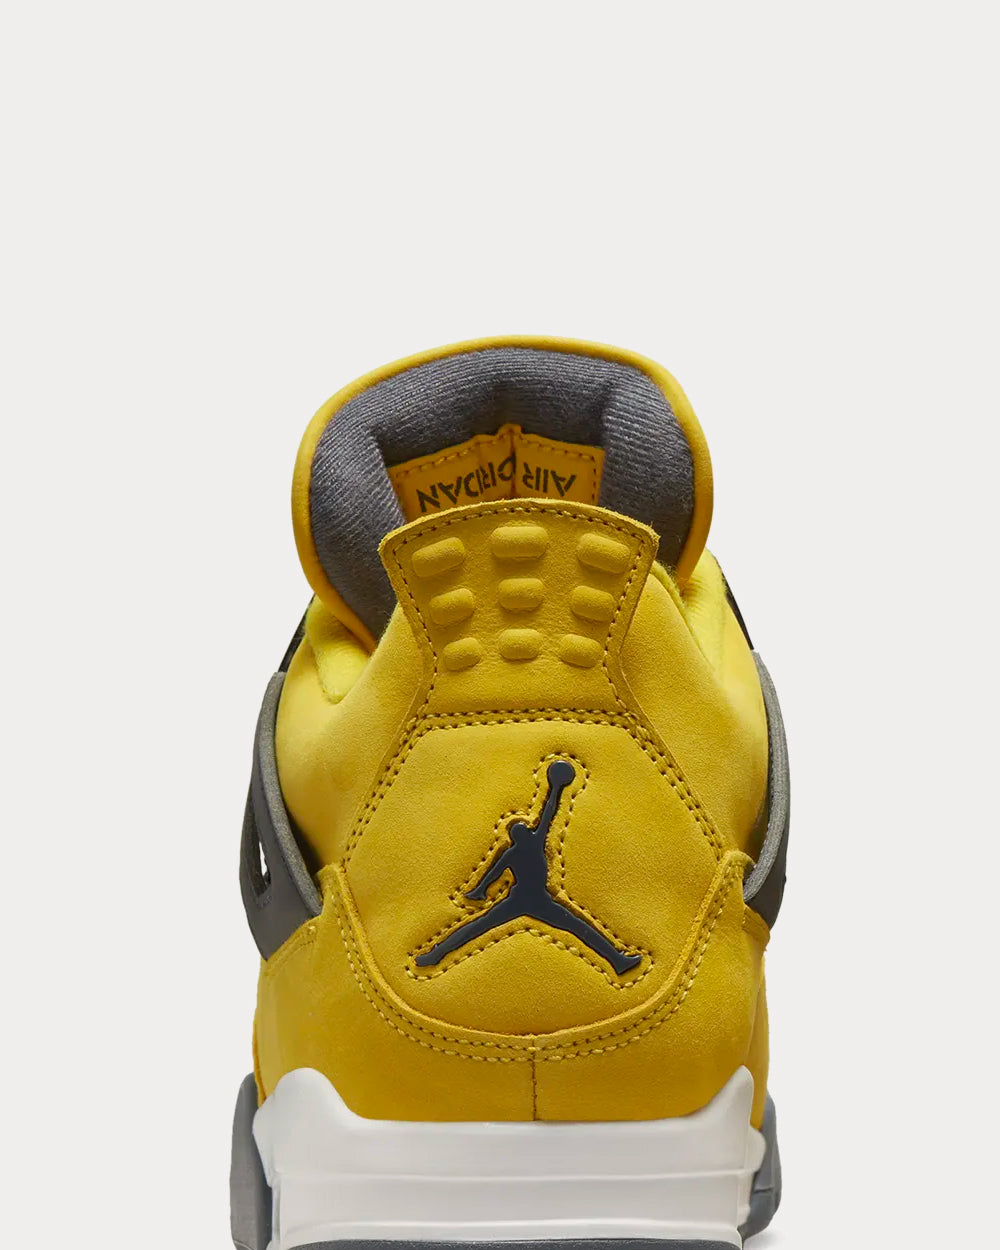 Jordan - Air Jordan 4 Tour Yellow High Top Sneakers